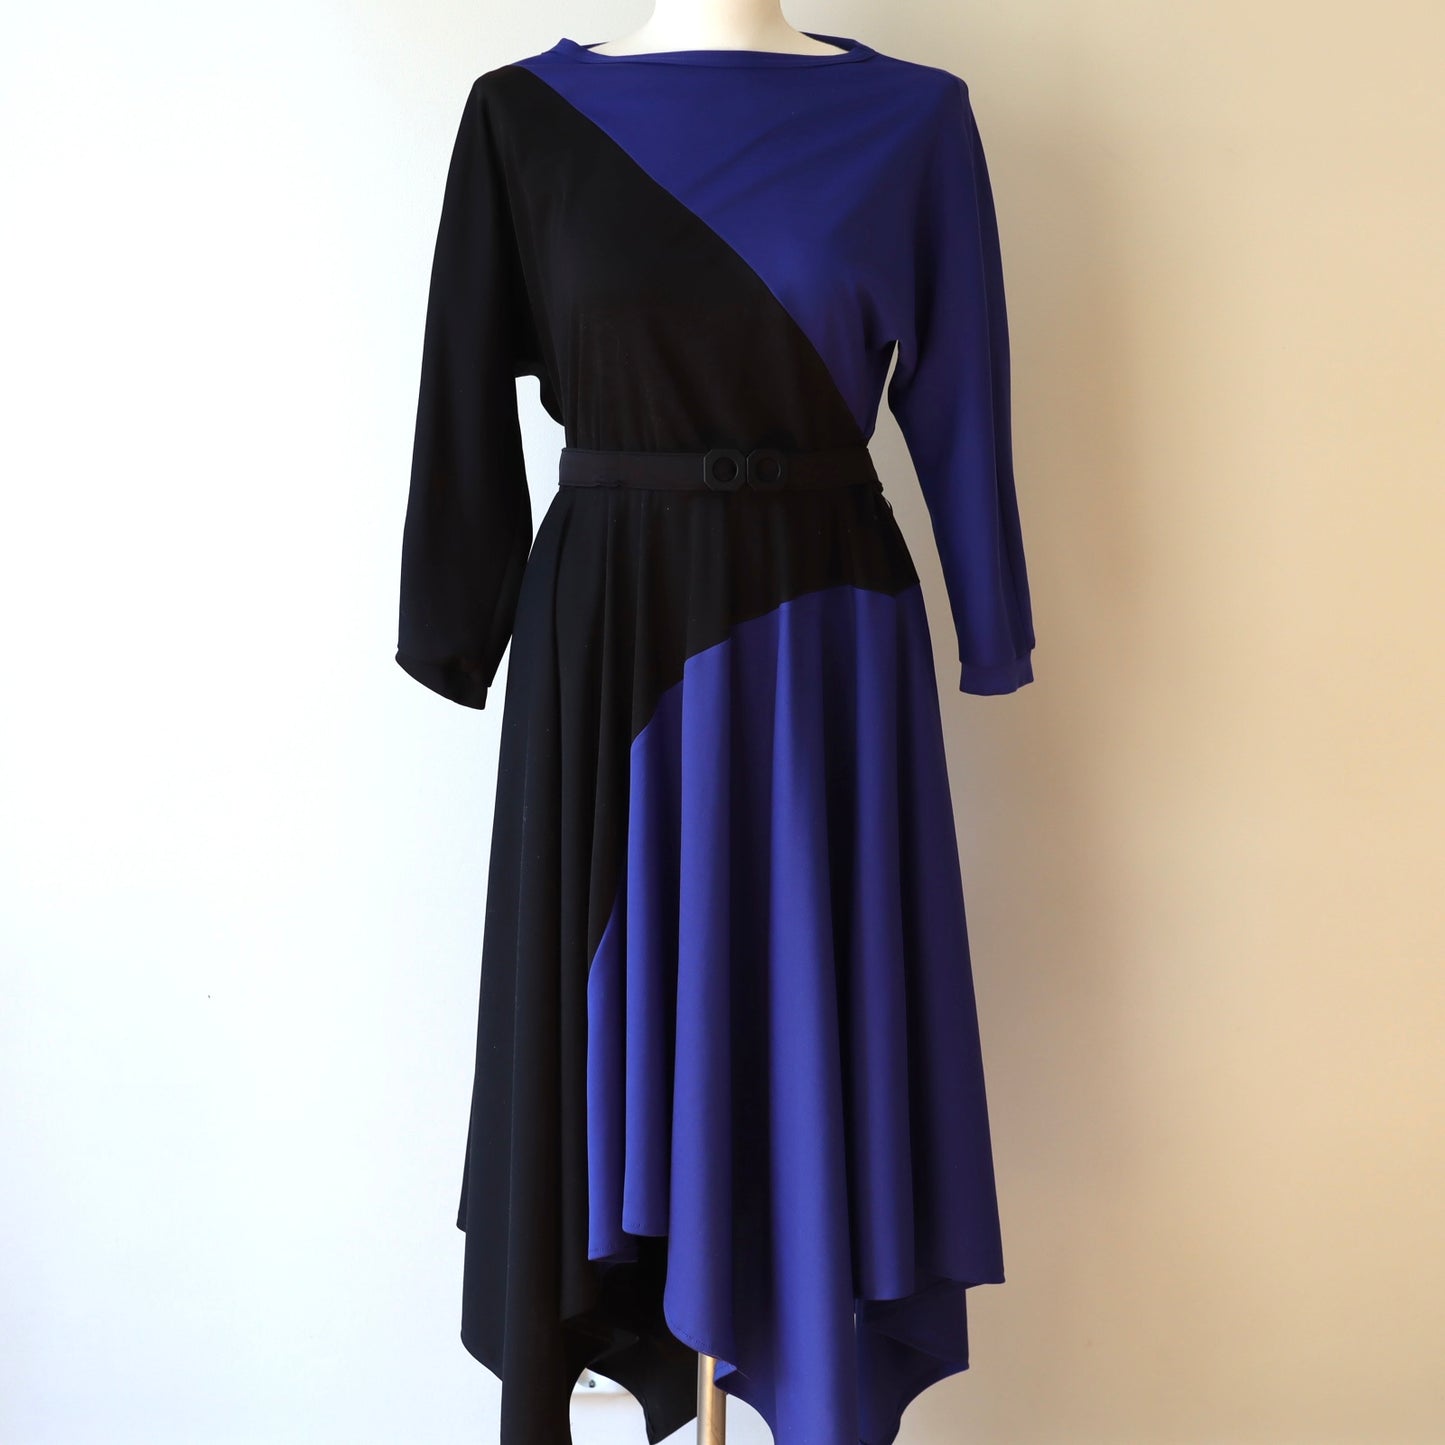 Vintagekjole, i blått og svart